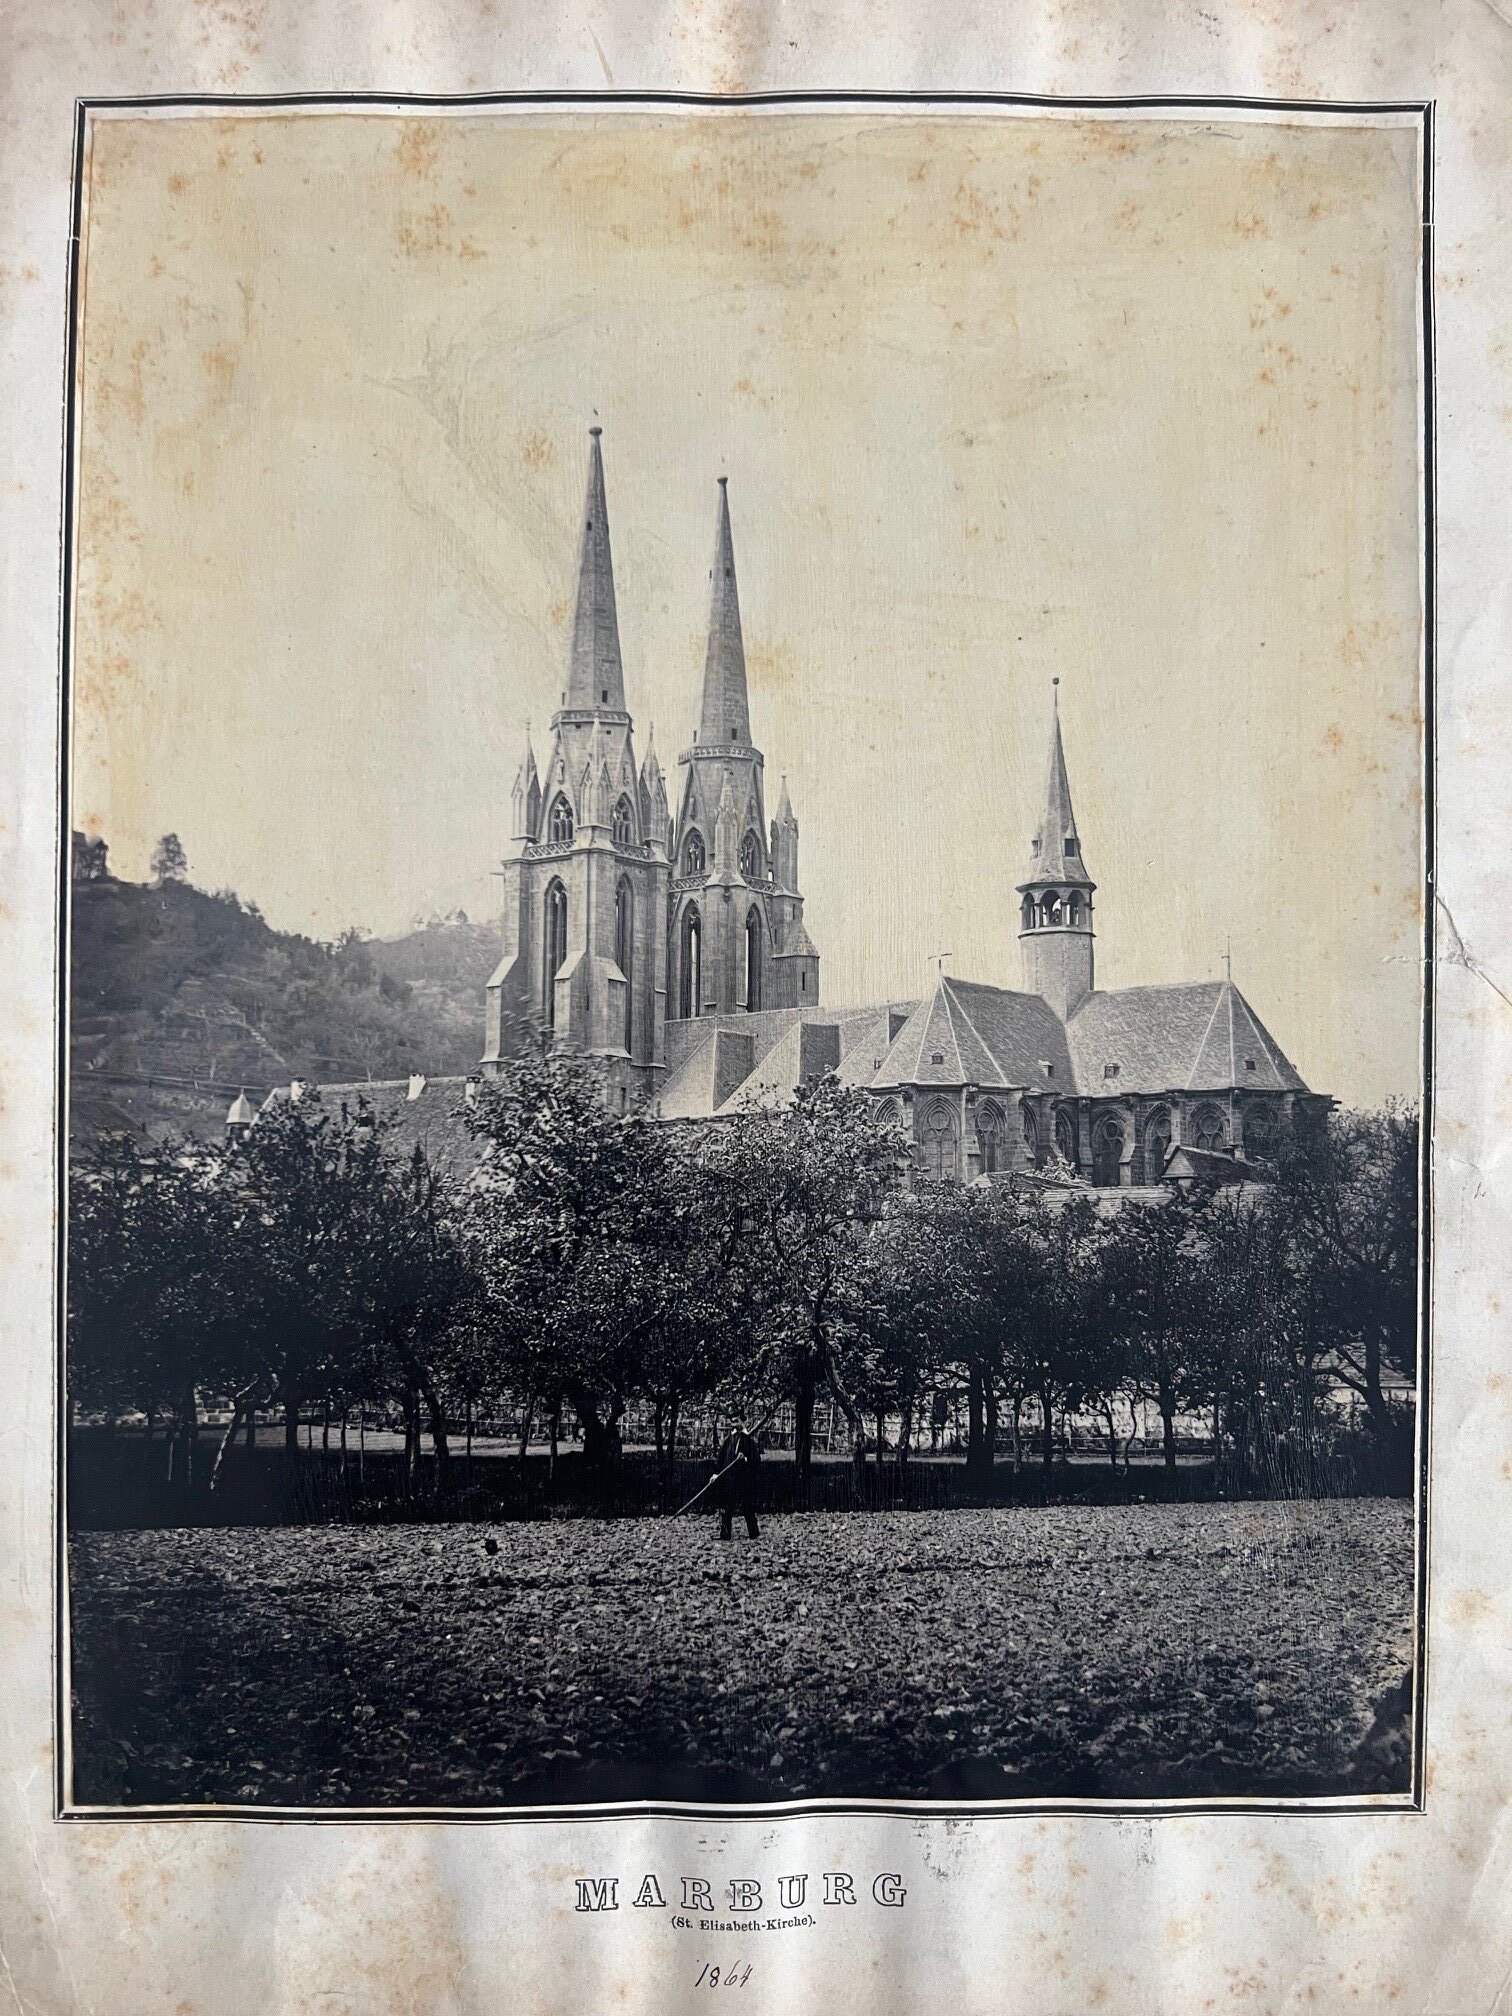 Unbekannter Fotograf, Die St. Elisabeth-Kirche in Marburg, ca. 1870. (Taunus-Rhein-Main - Regionalgeschichtliche Sammlung Dr. Stefan Naas CC BY-NC-SA)